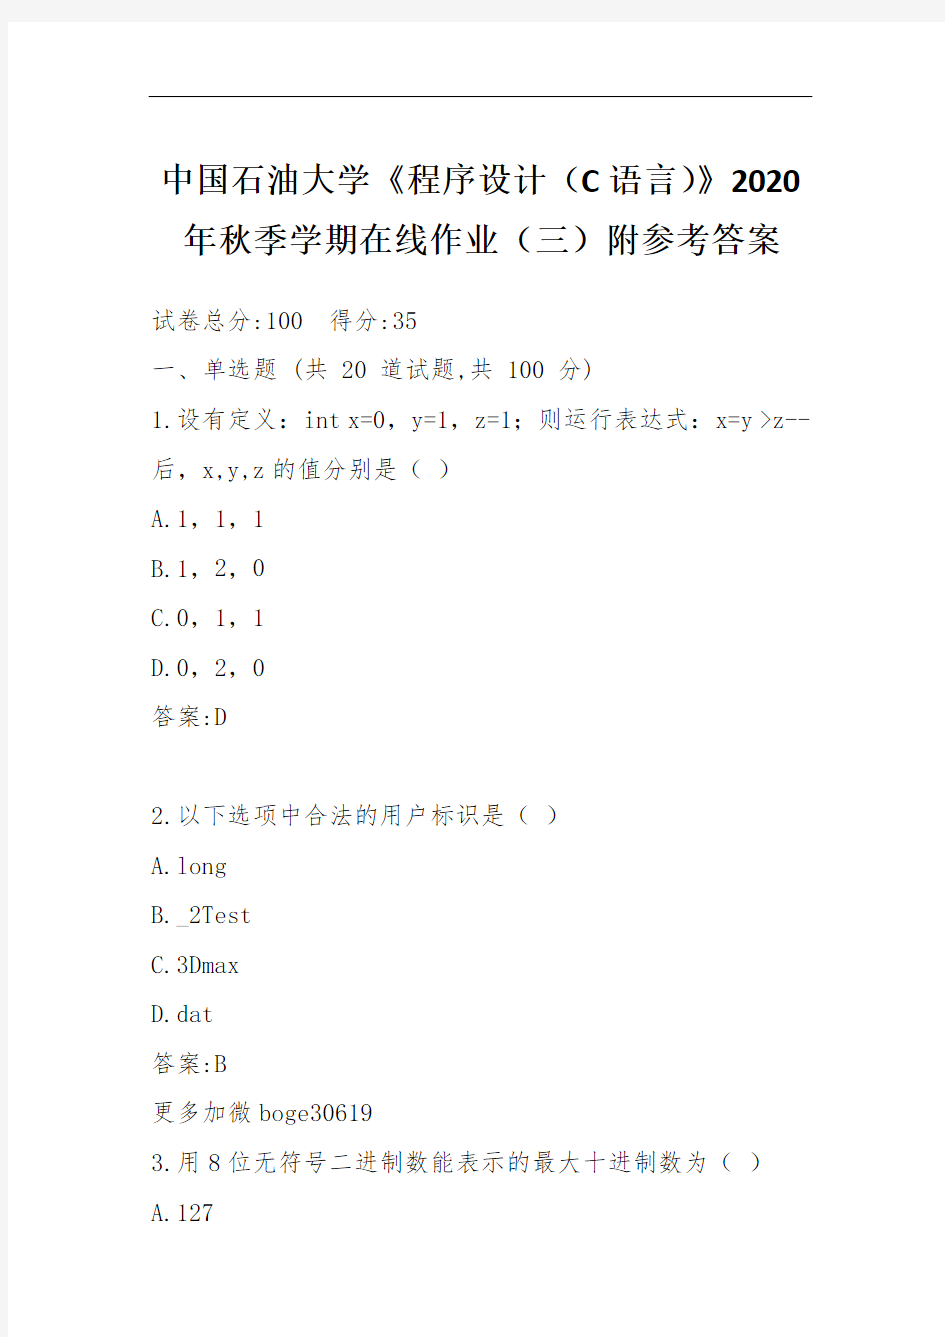 中国石油大学《程序设计(C语言)》2020年秋季学期在线作业(三)附参考答案